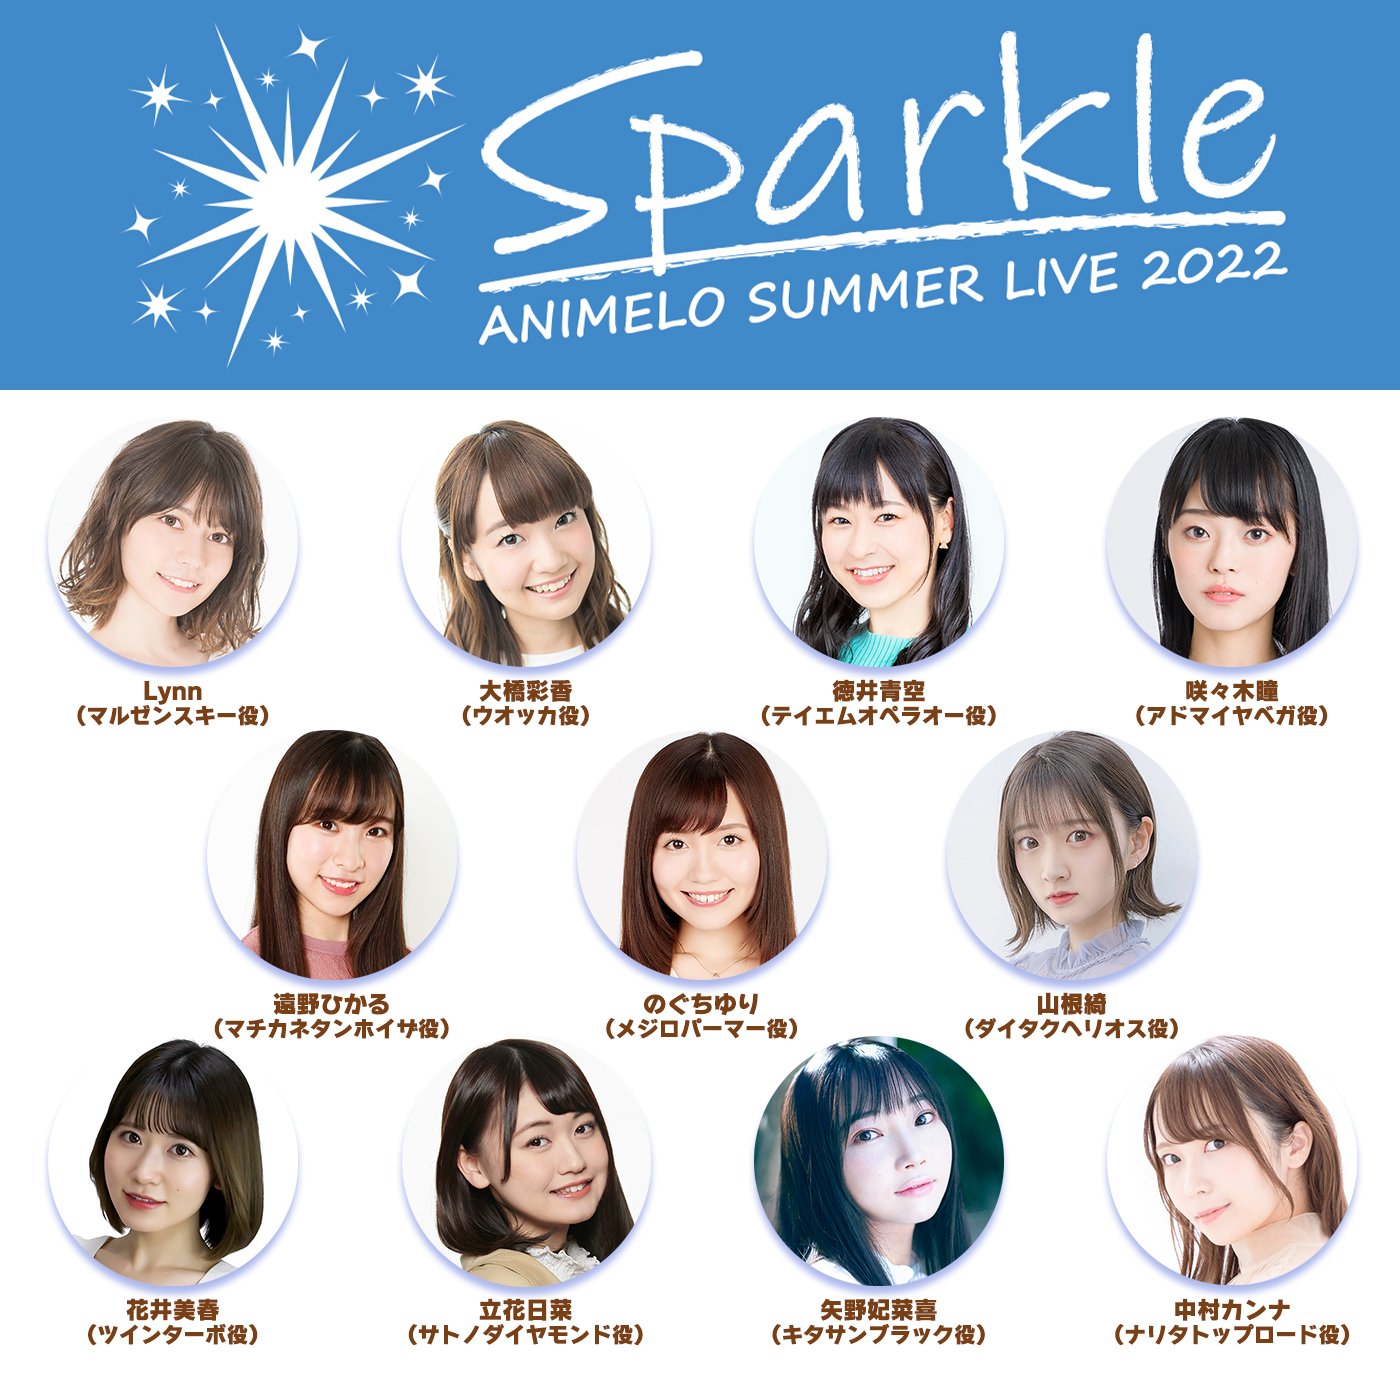 ウマ娘 8月27日開催の「アニメロサマーライブ2022 -Sparkle-」に出走!